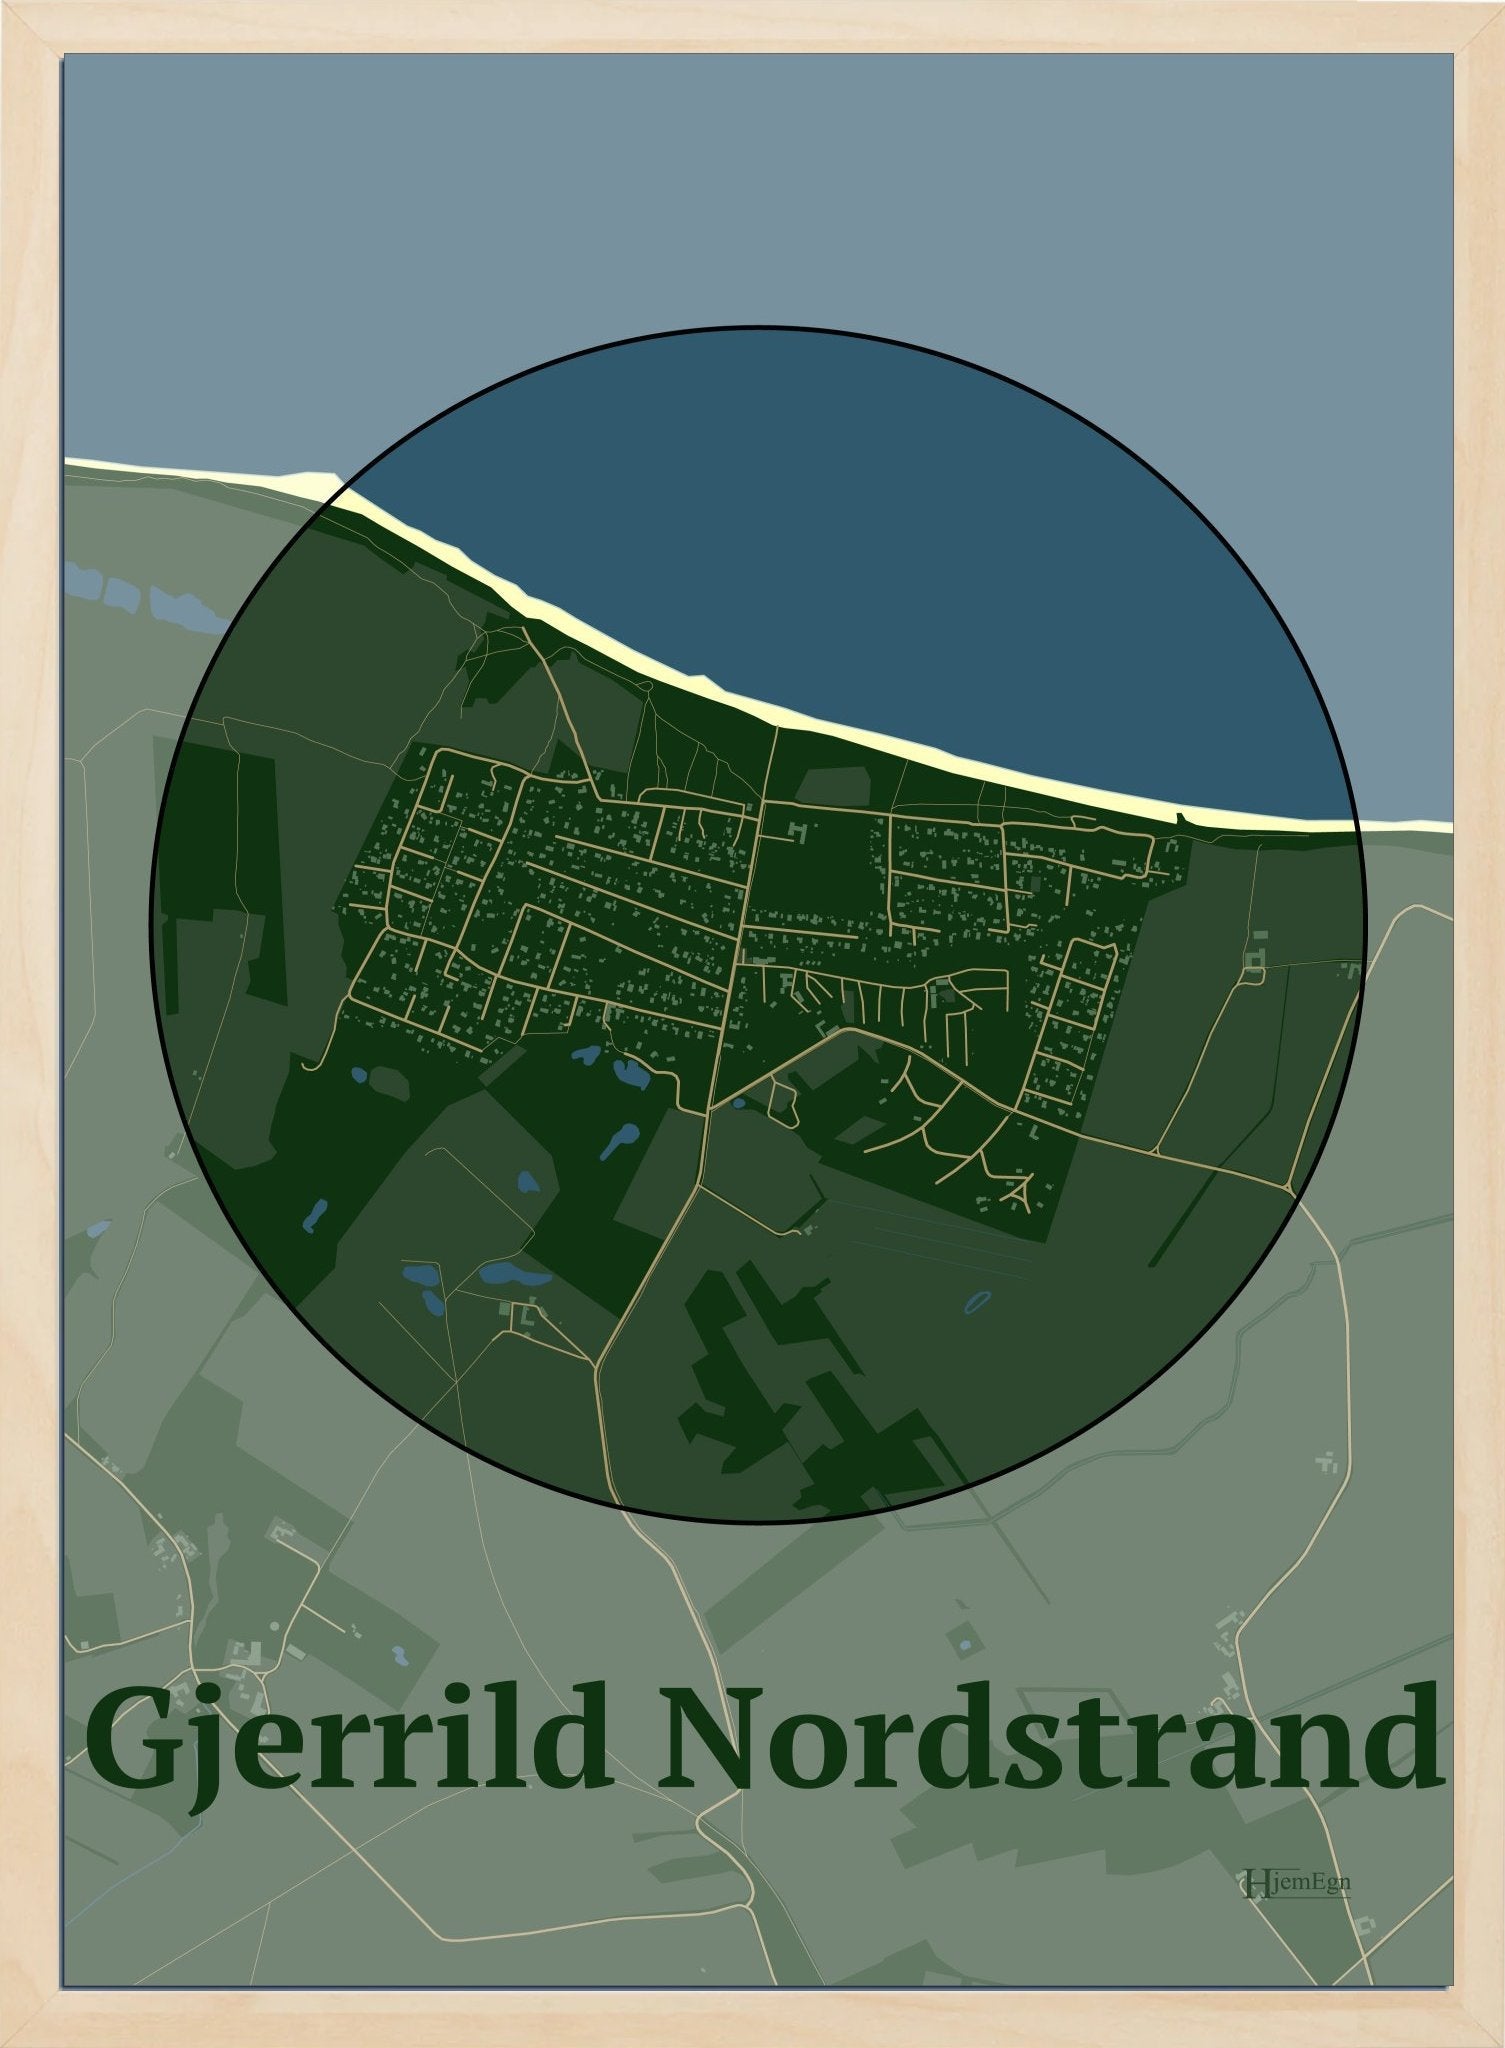 Gjerrild Nordstrand plakat i farve mørk grøn og HjemEgn.dk design centrum. Design bykort for Gjerrild Nordstrand